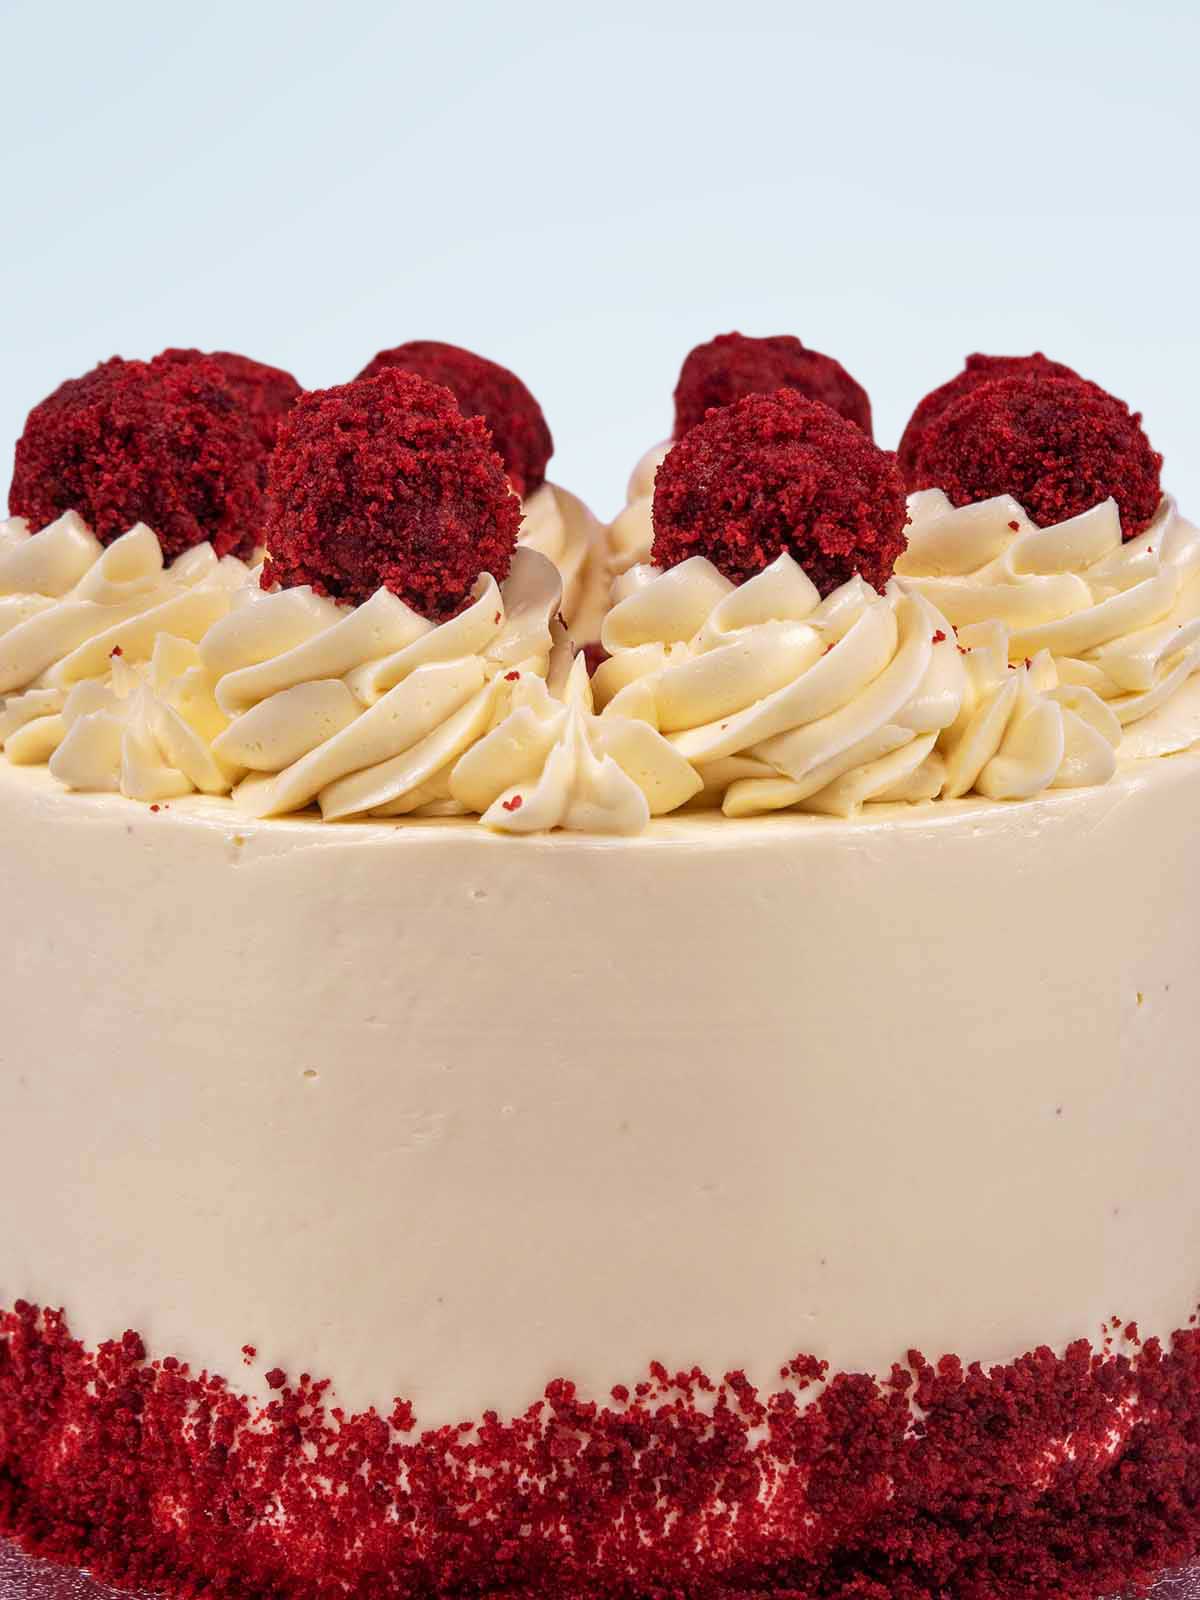 Red Velvet Truffle Cake to Buy